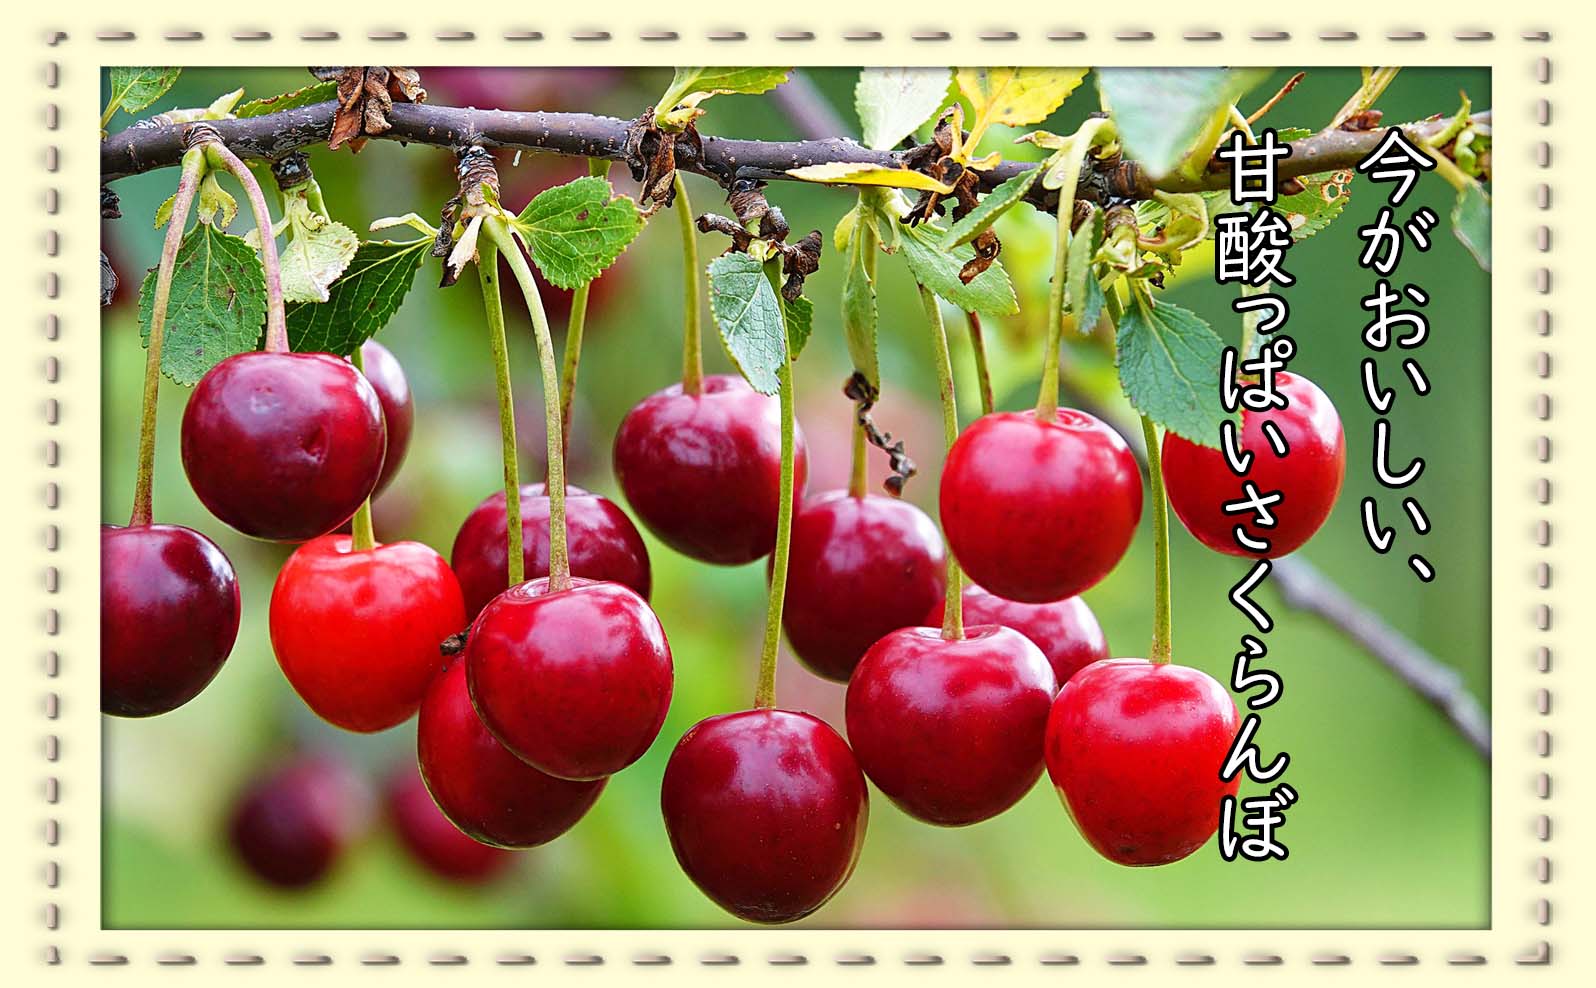 きらきらと輝く、真っ赤な果実が魅力☆今が旬のさくらんぼ